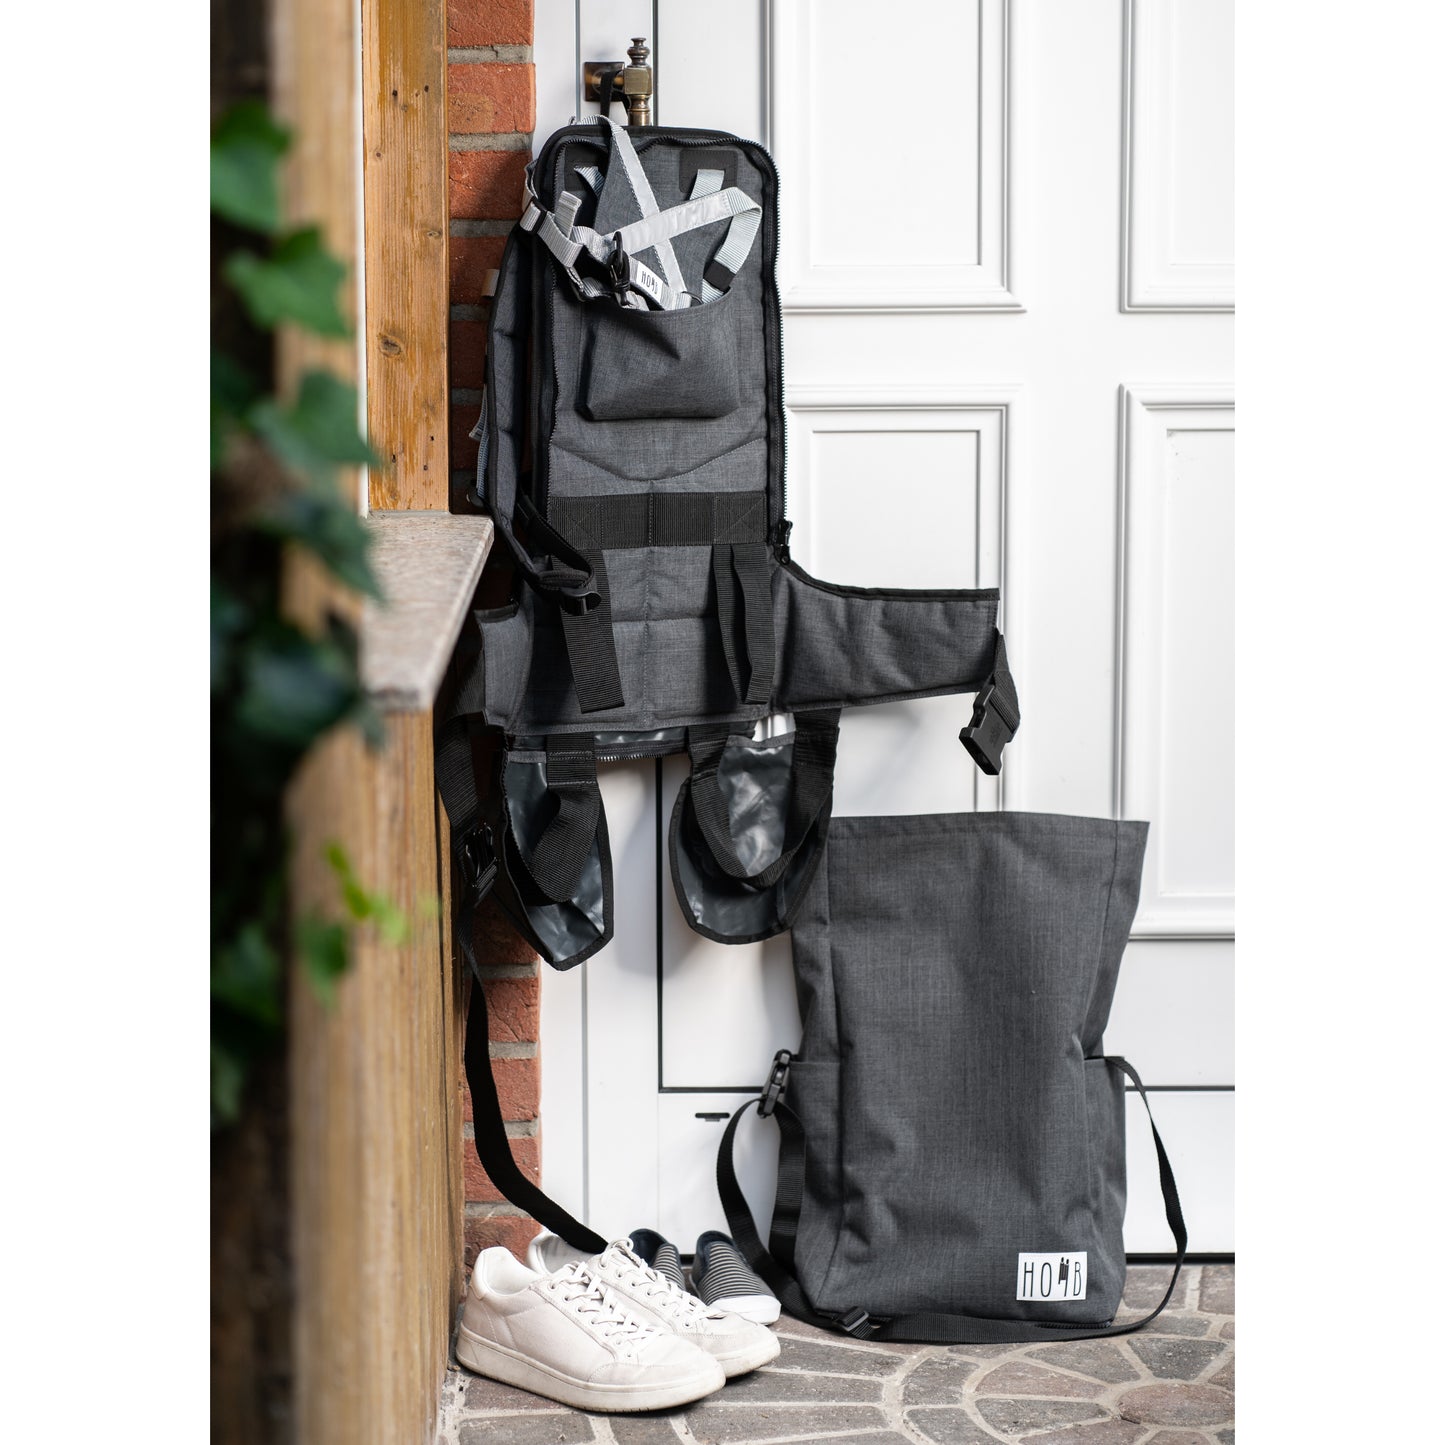 HOMB - Rucksack mit Kindertrage - Rückentrage ab 2 Jahre bis 25 kg